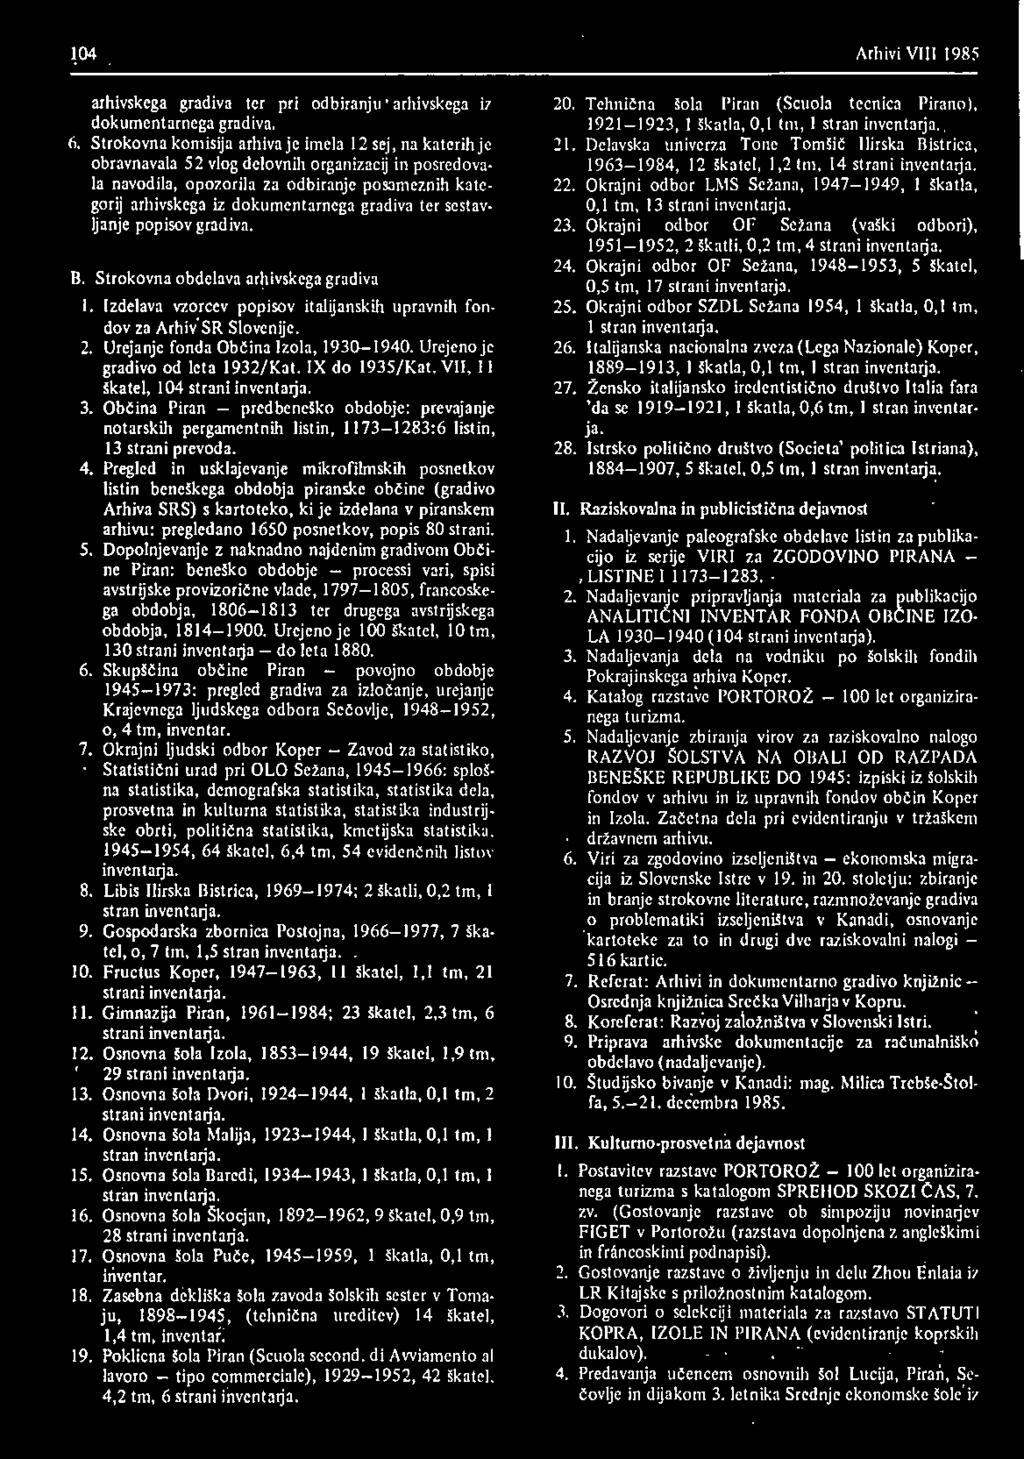 Občina Piran predbeneško obdobje: prevajanje notarskih pergamentnih listin, 1173 1283:6 listin, 13 strani prevoda.